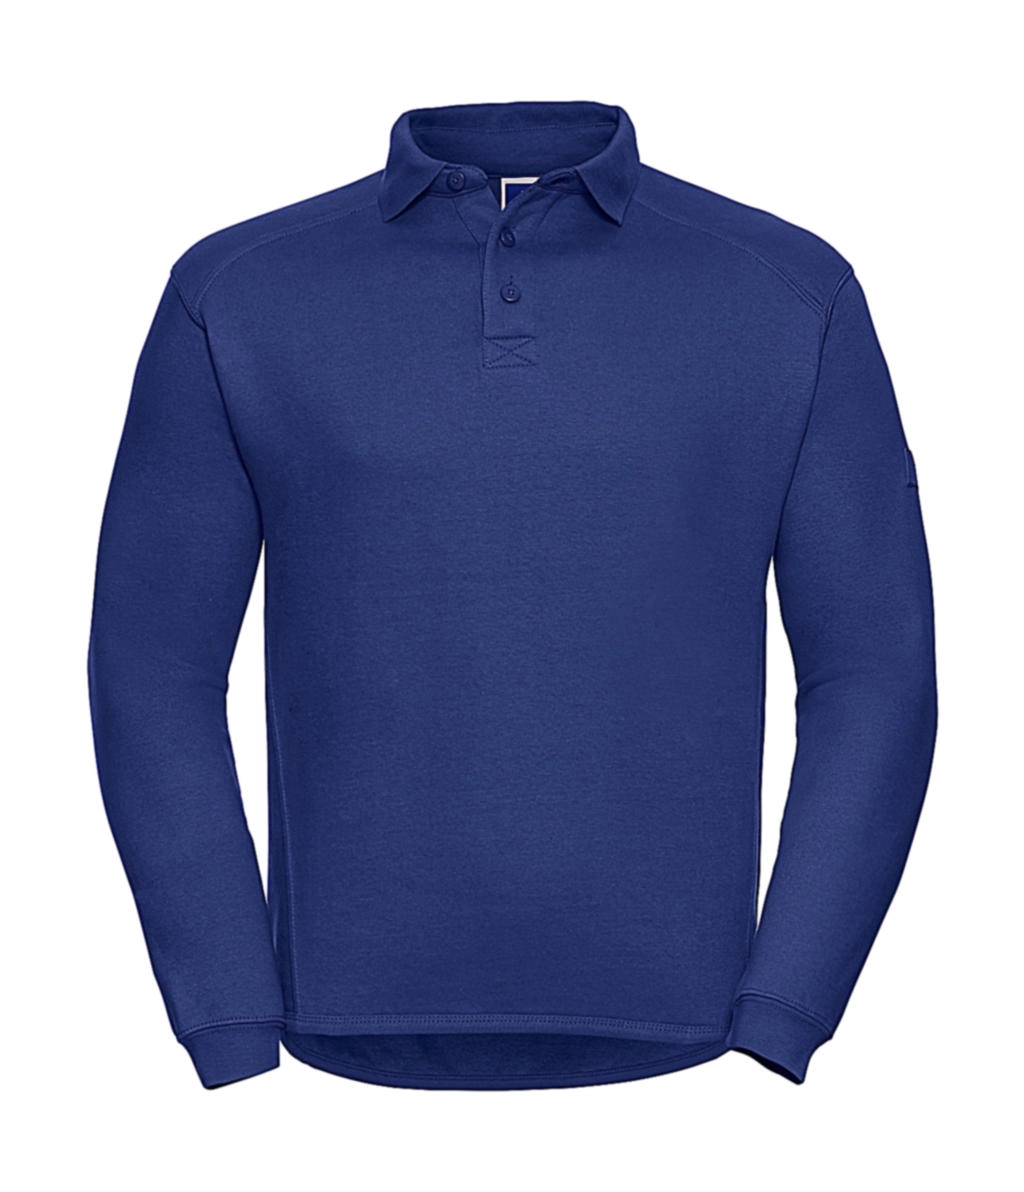 Heavy Duty Collar Sweatshirt zum Besticken und Bedrucken in der Farbe Bright Royal mit Ihren Logo, Schriftzug oder Motiv.